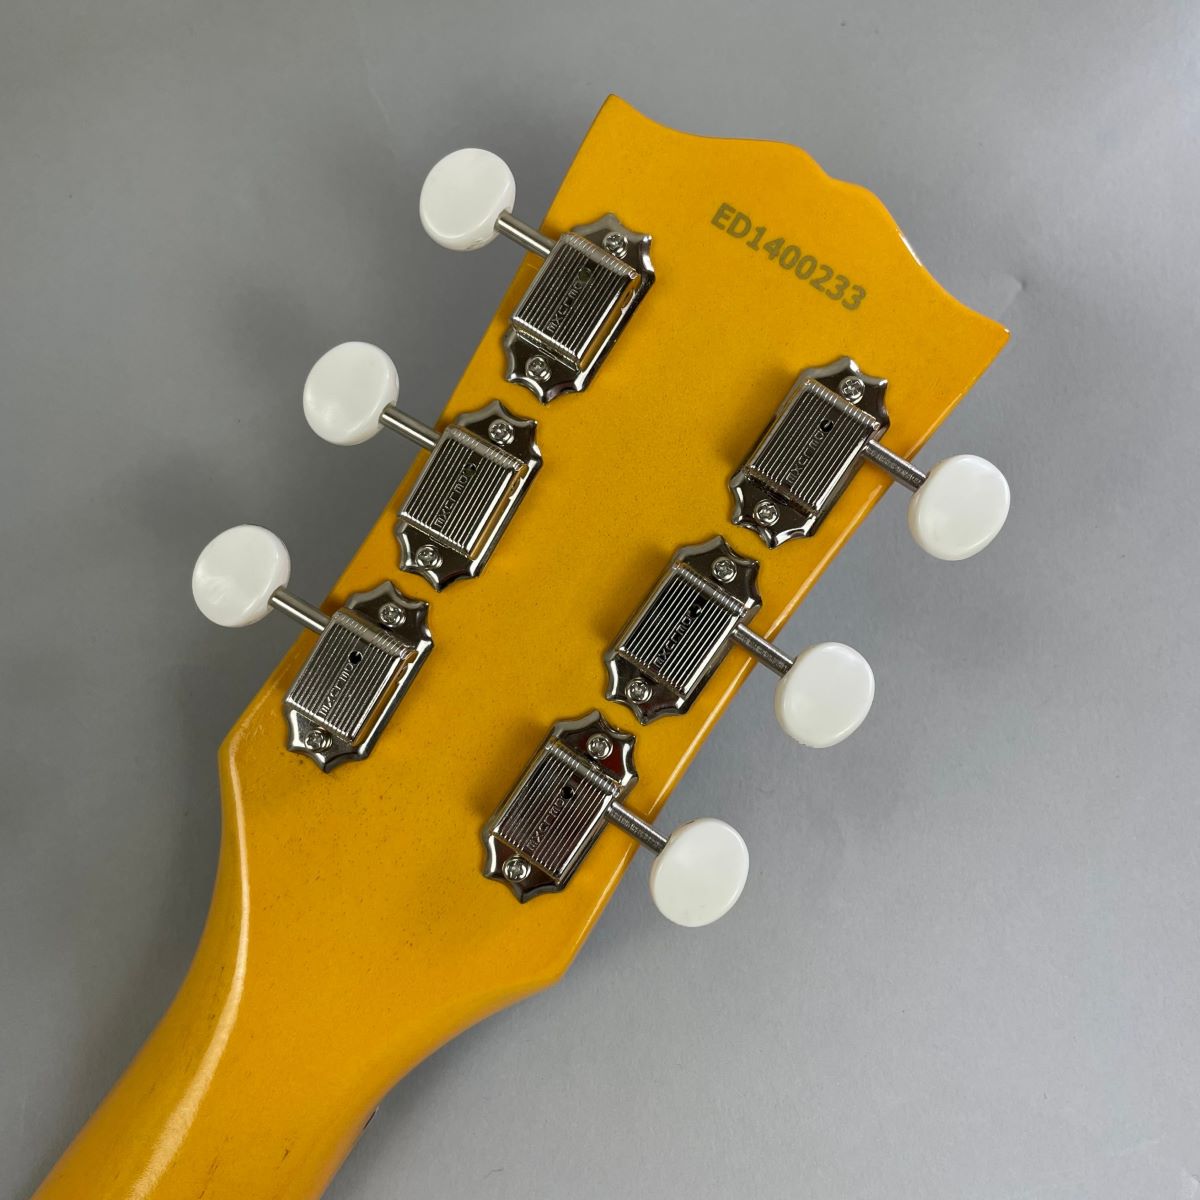 エレキギター】Edwards エドワーズ Limited MODEL リミテッド レスポールタイプ IC1264SU - 楽器、器材